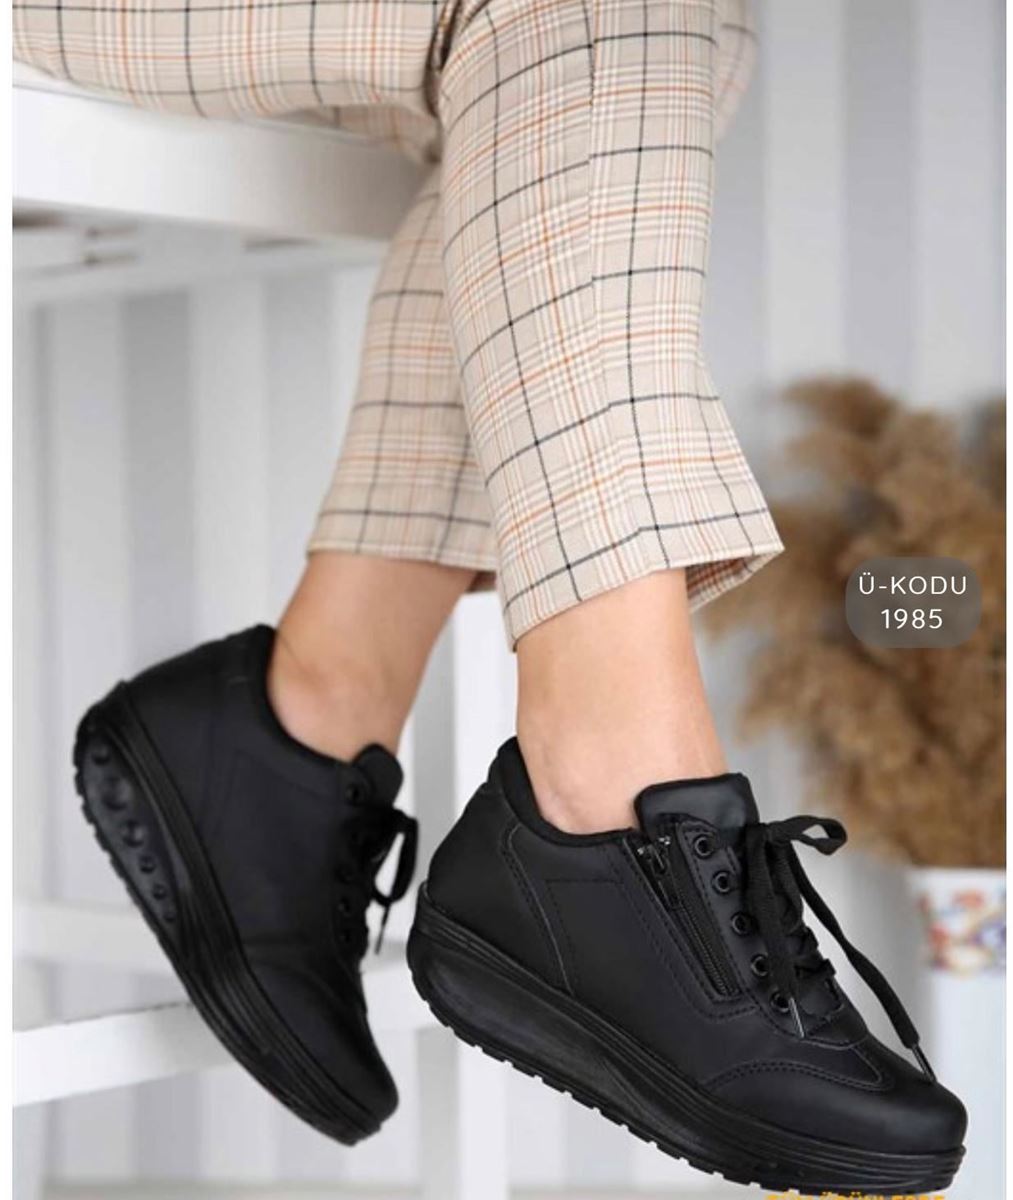 Pilla Siyah Fermuarlı Kadın Ayakkabı resmi